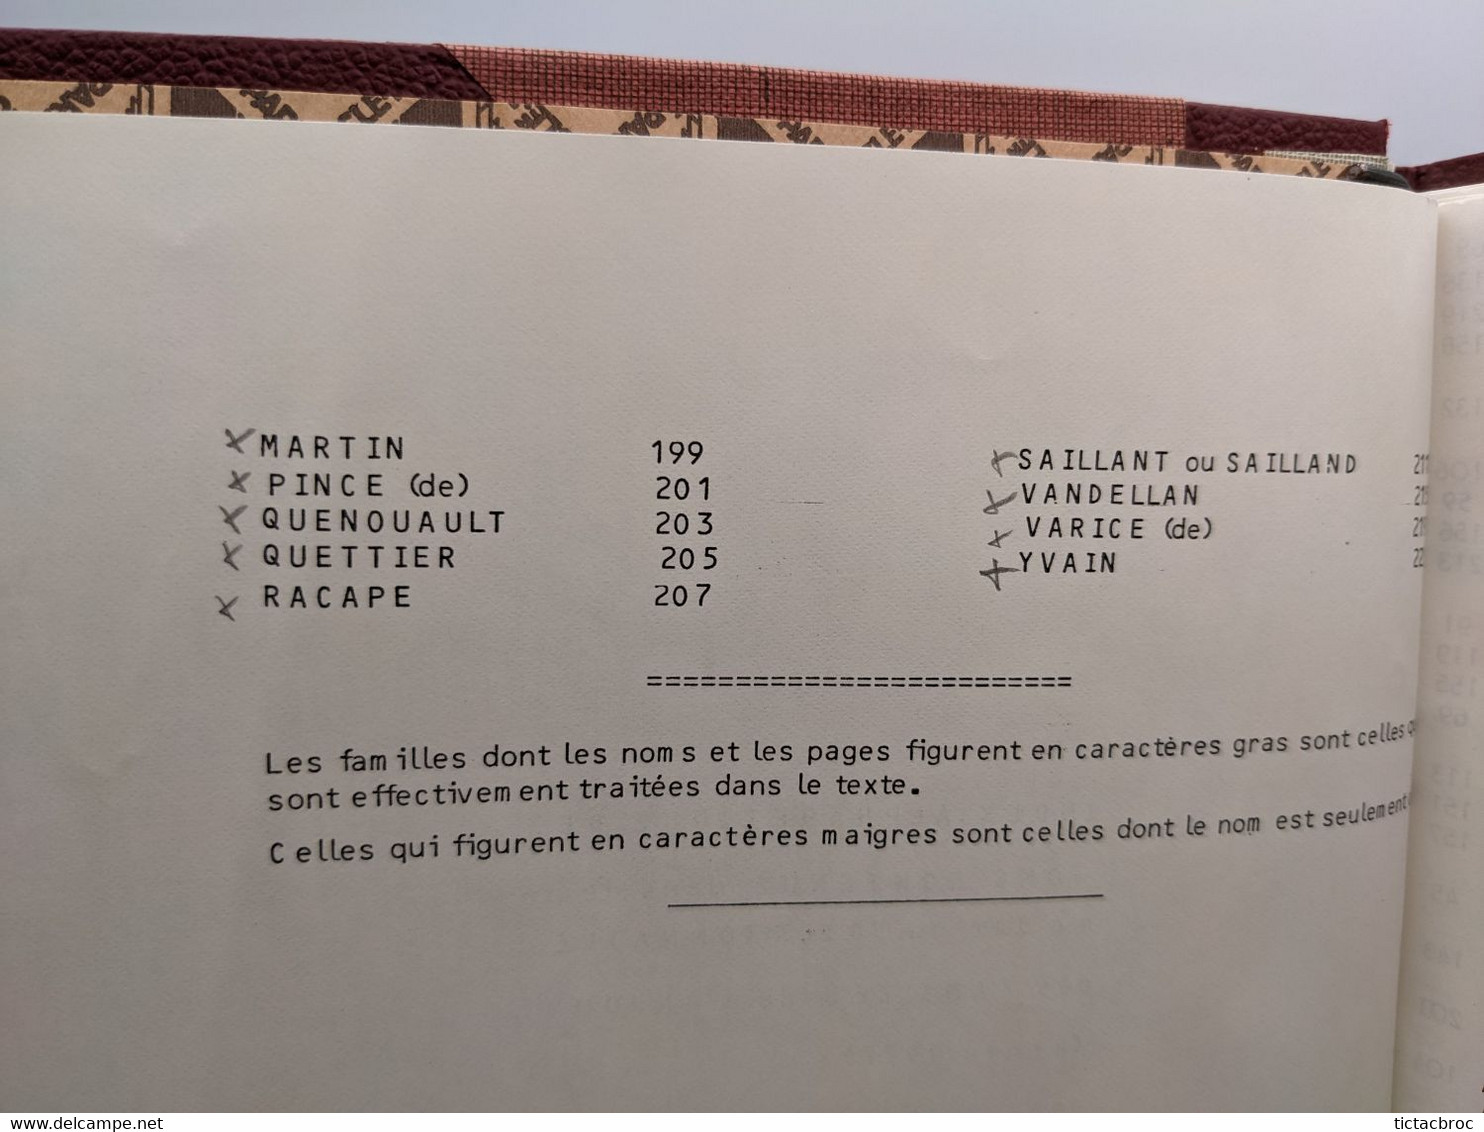 Dictionnaire des familles de l'Anjou de l'association généalogique et archéologique de l'Anjou généalogie 1977